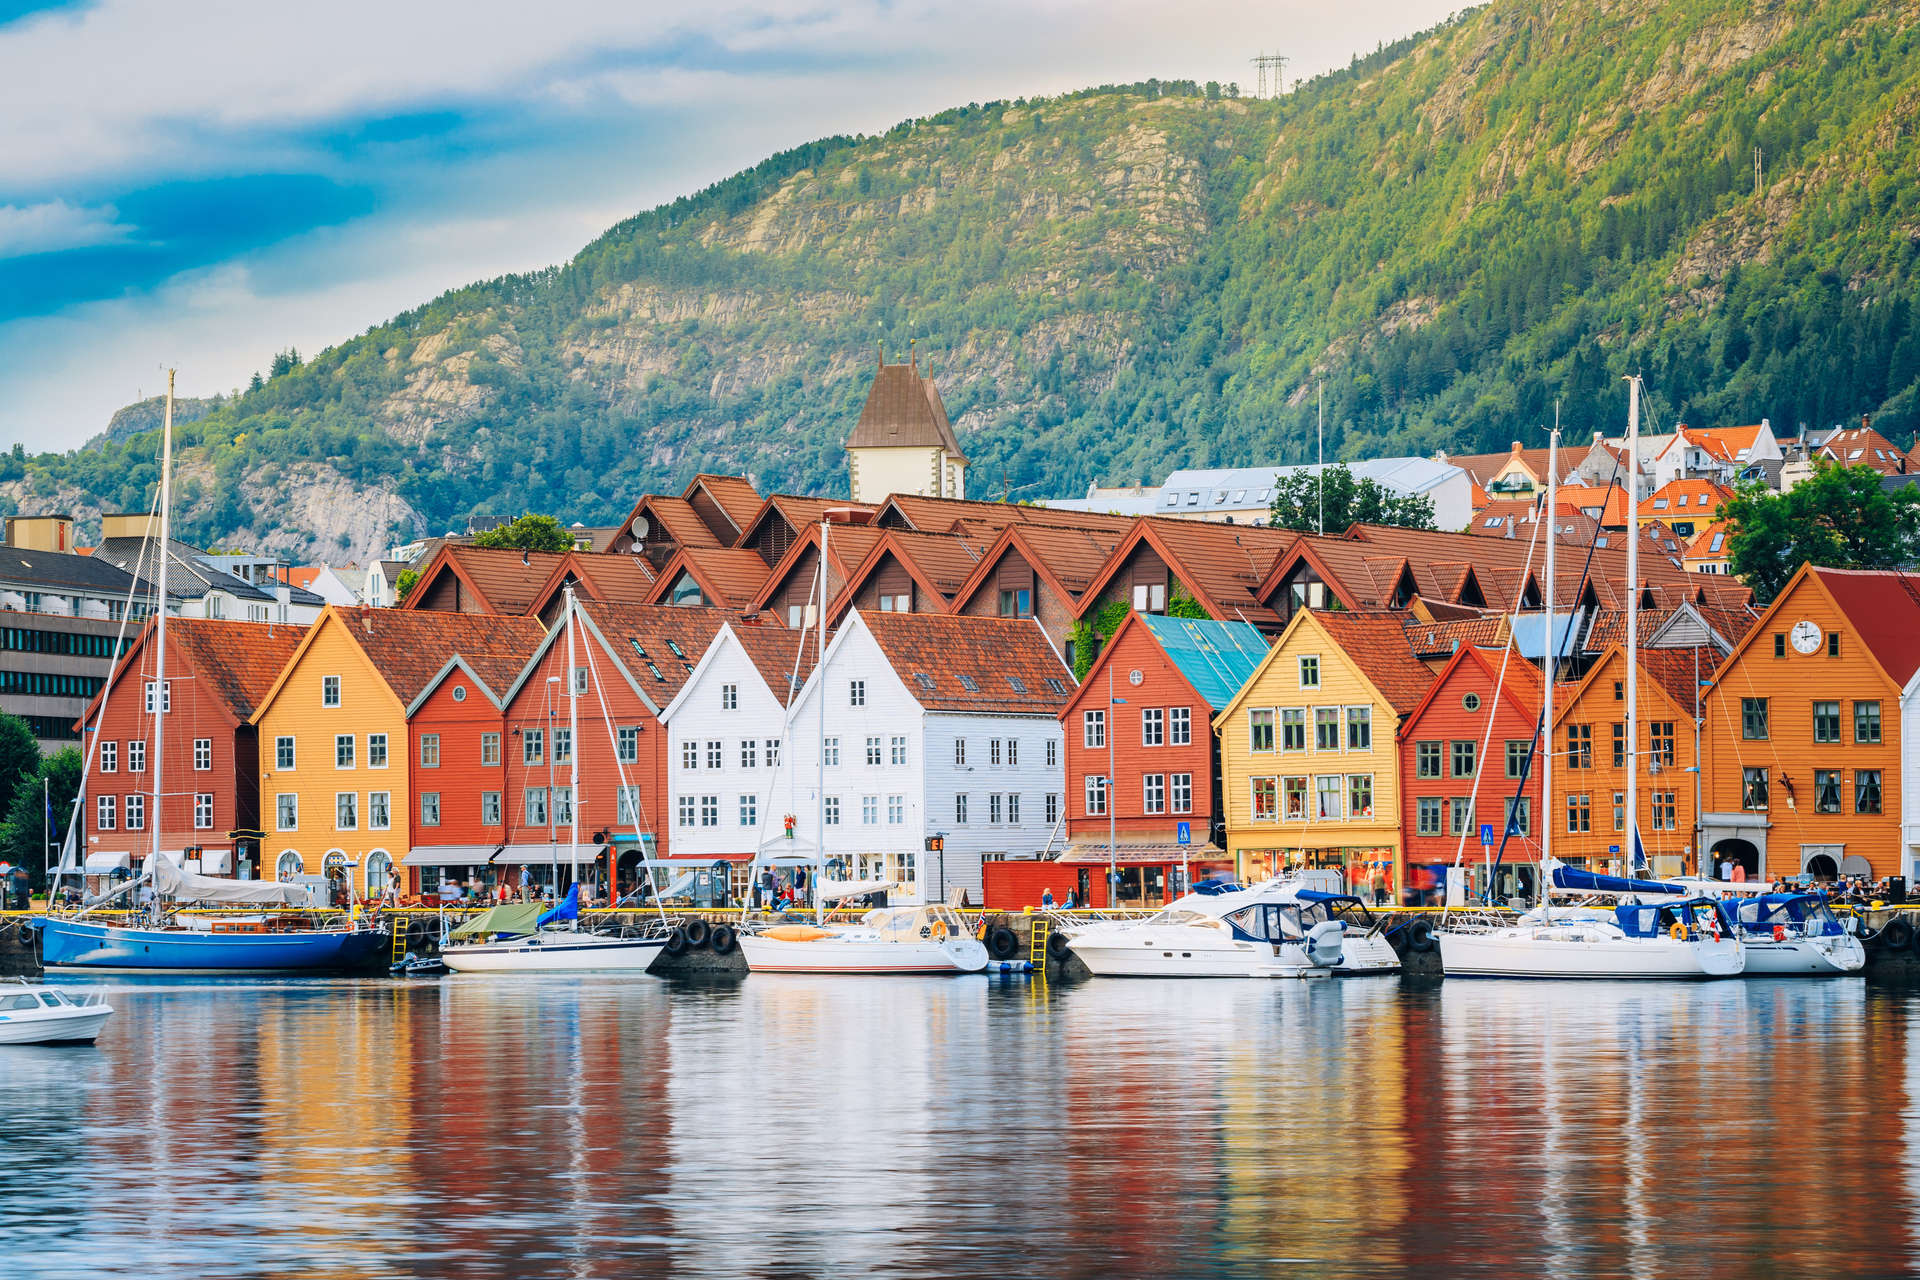 Bergen is regarded as the 'capital' of Norway's southwestern fjords region